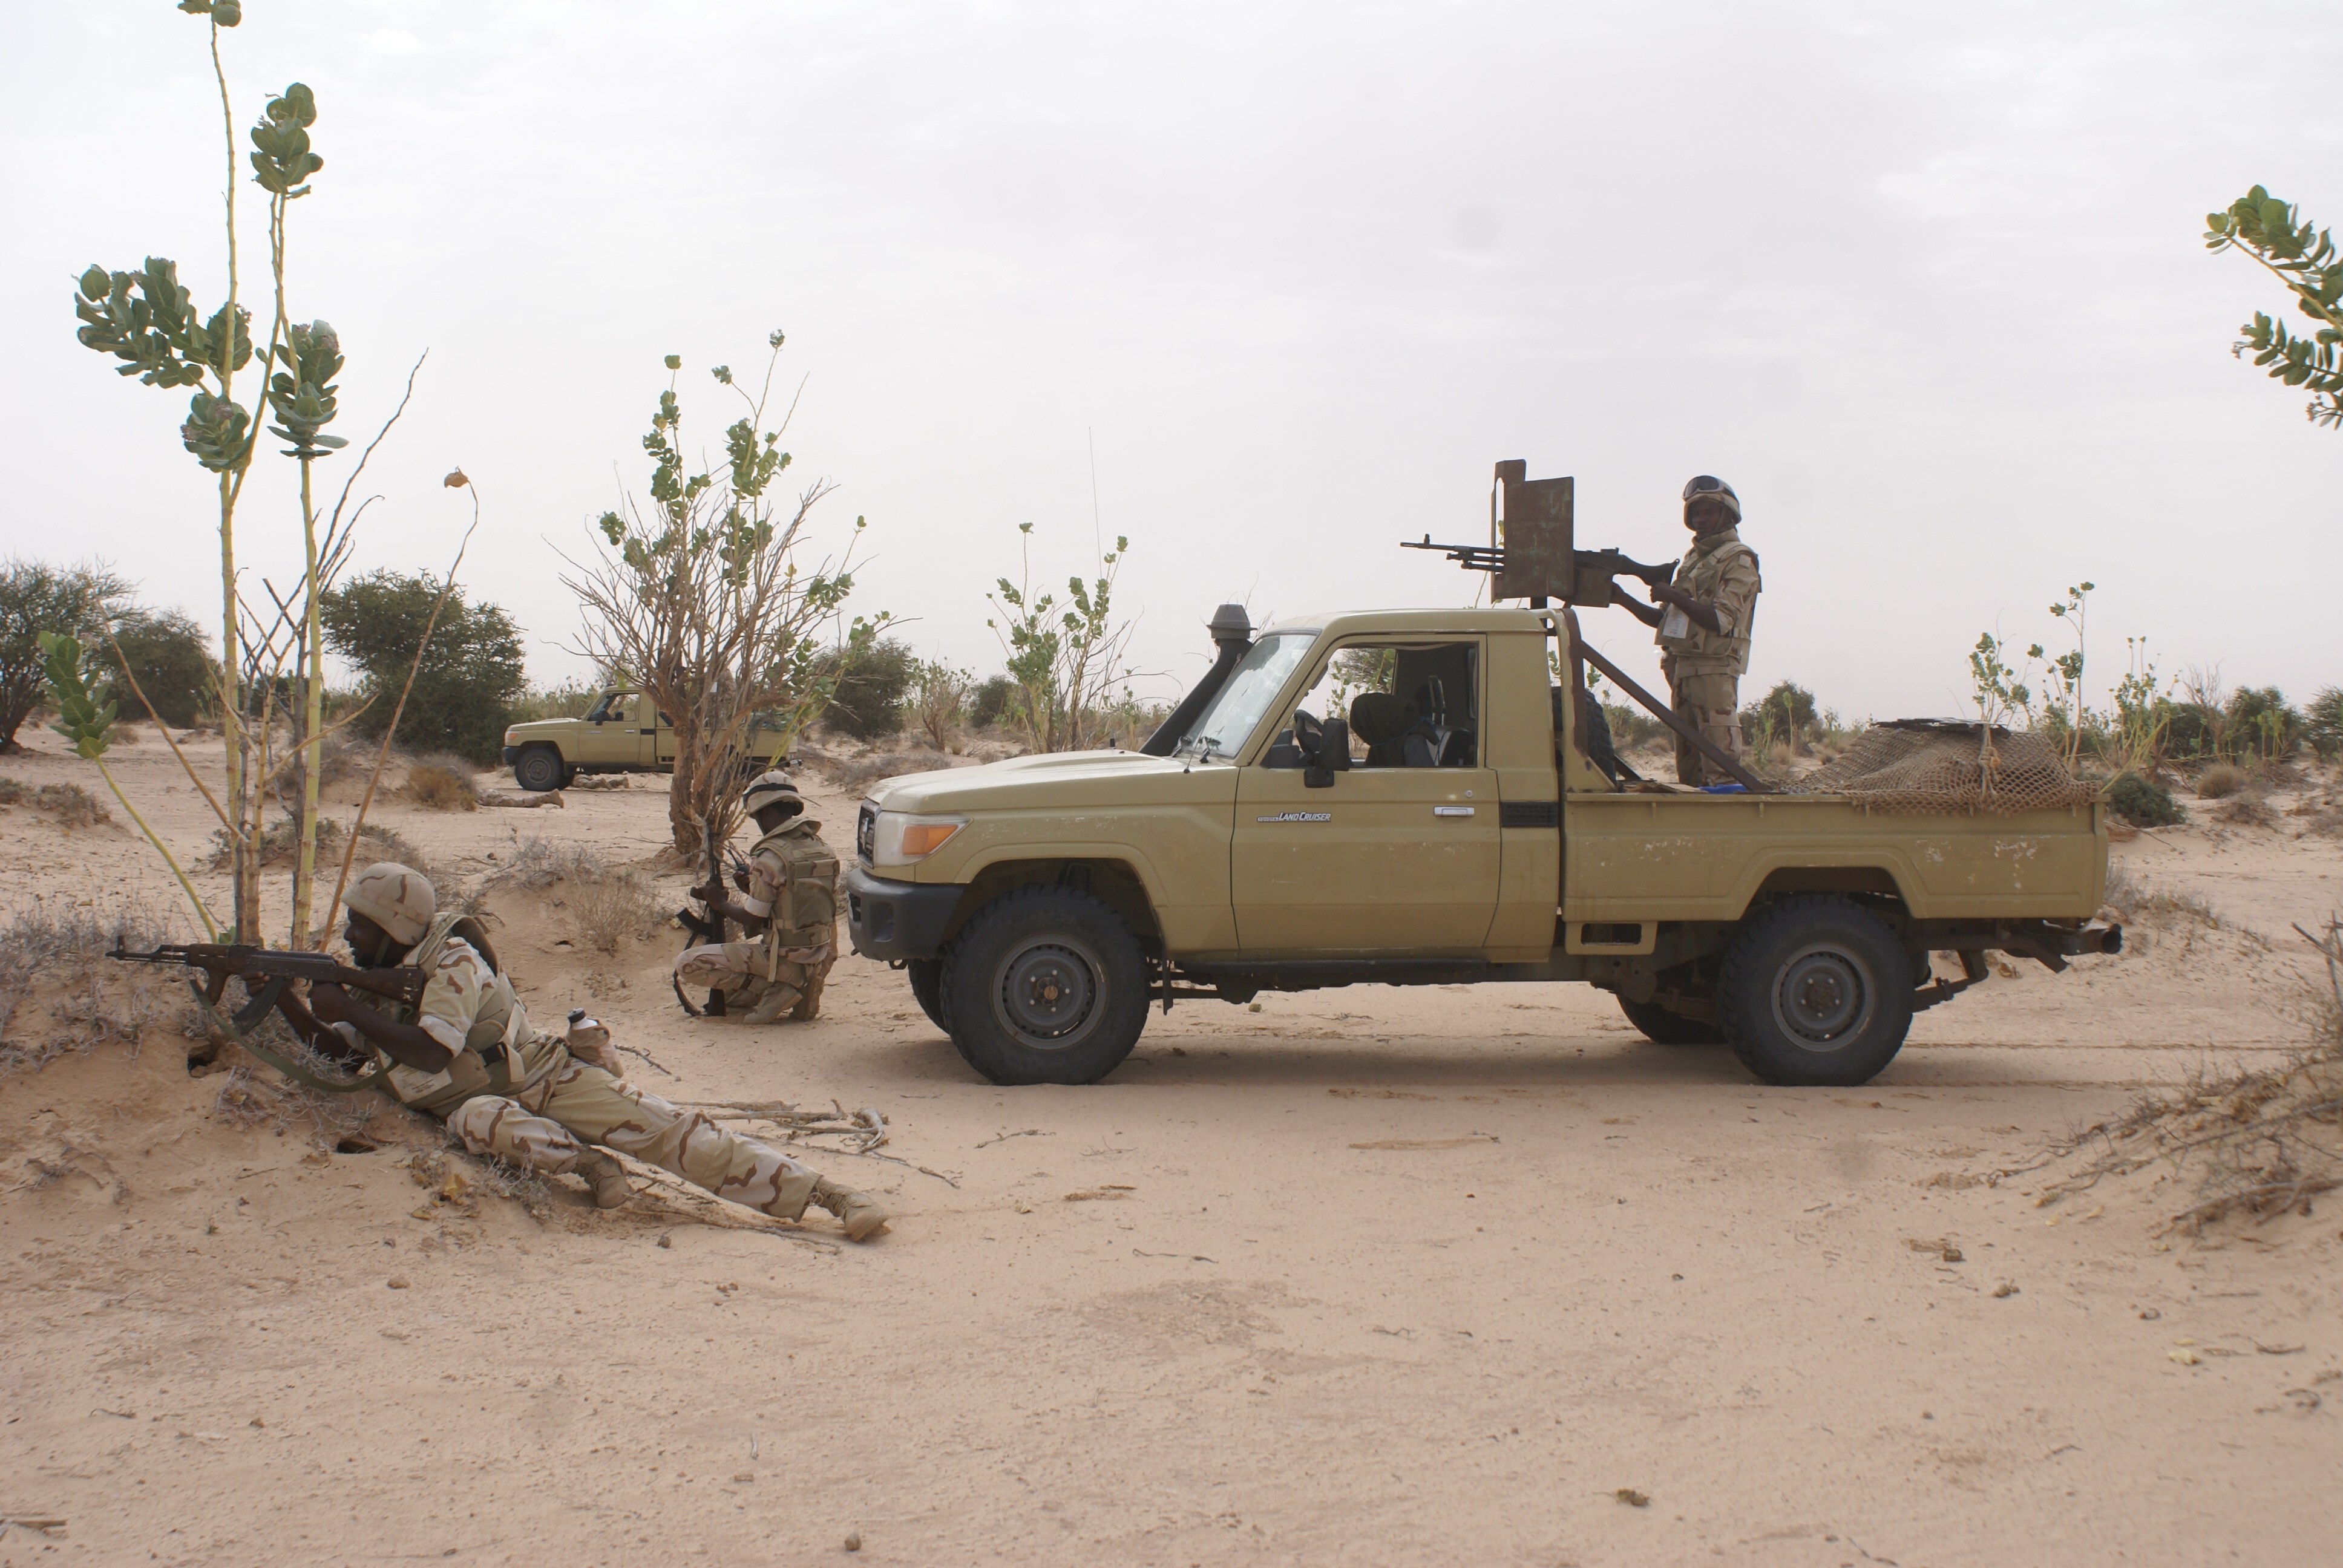 El Ejército español se instruye en el duro desierto de Mauritania